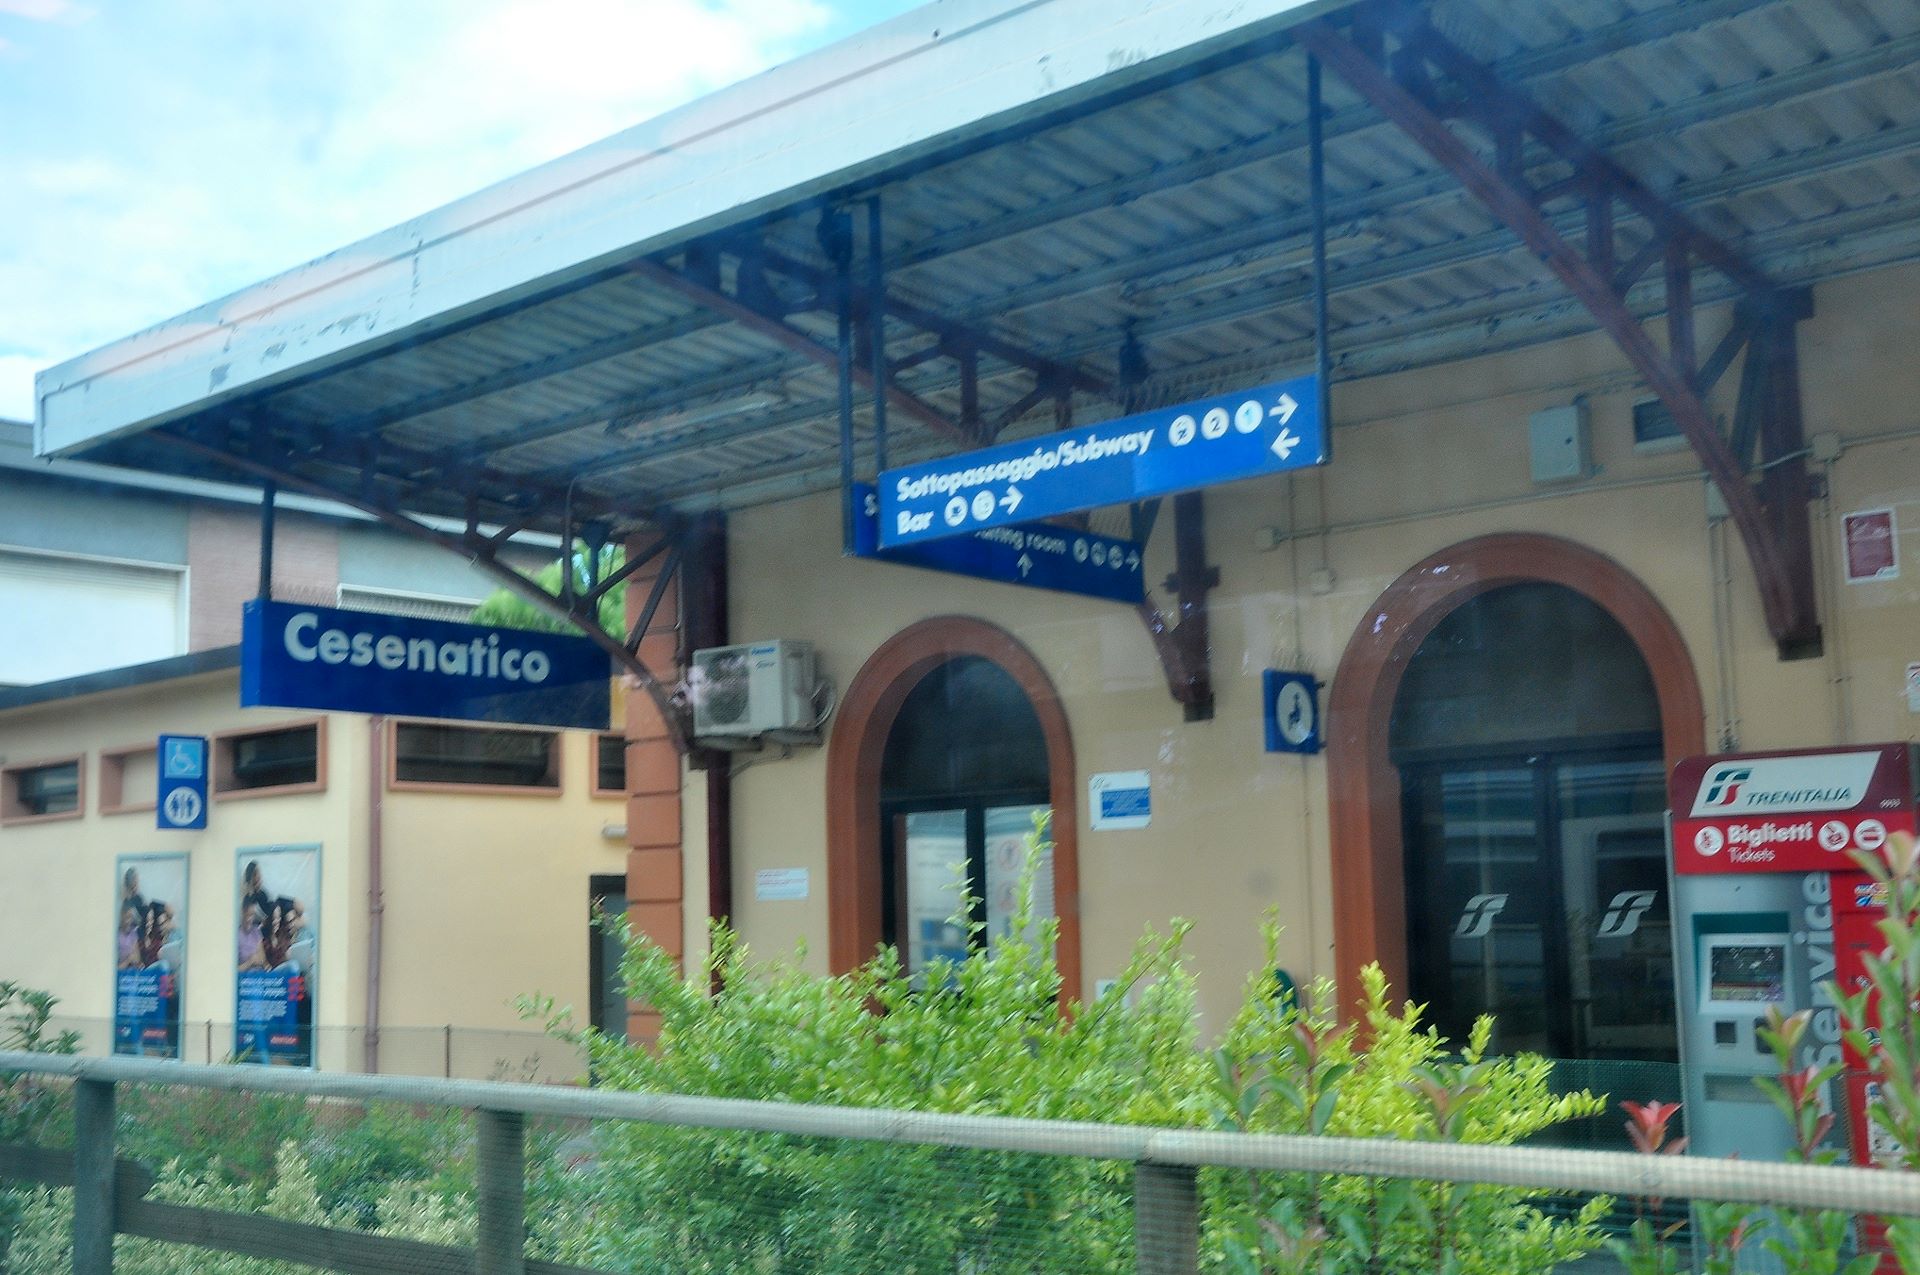 Mit der Bahn durch Cesenatico, trotz Beschriftung Subway gibt es dort keine U-Bahn!